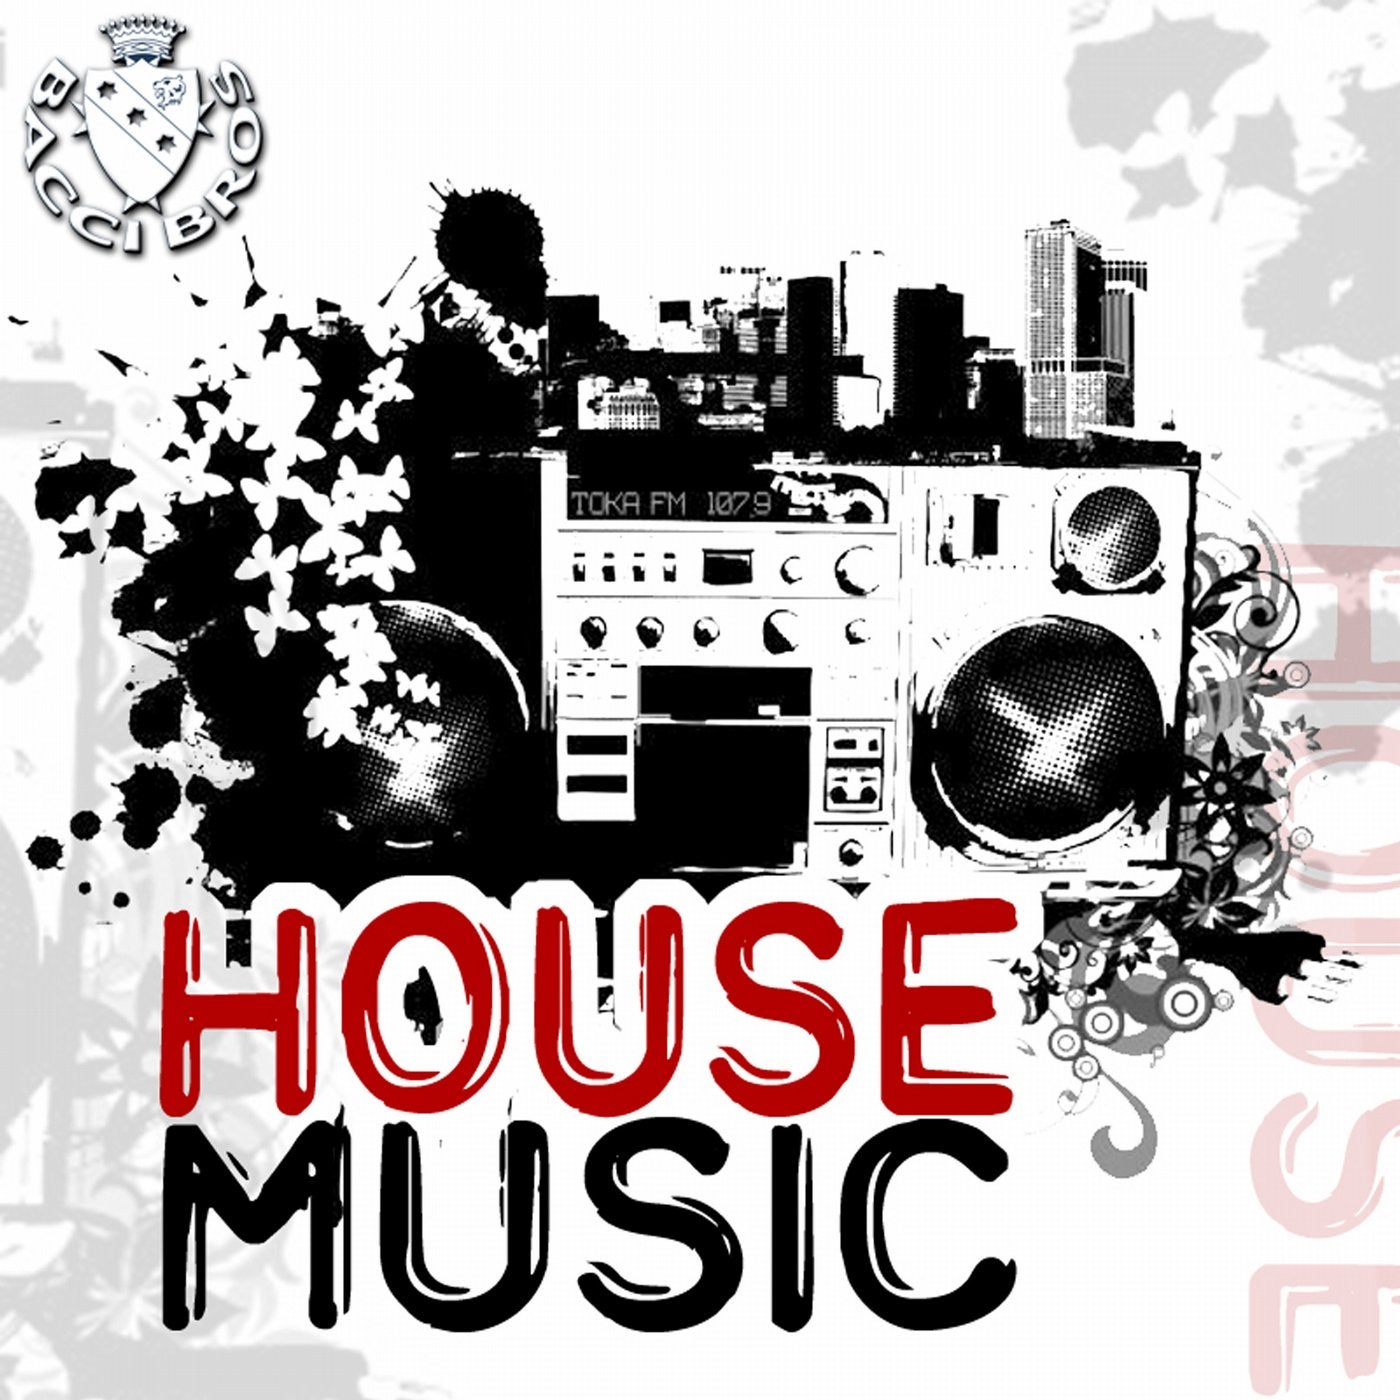 Песня me house. Музыкальный стиль House. House Music картинки. Хаус Жанр. Музыкальный стиль Хаус в рисунках.